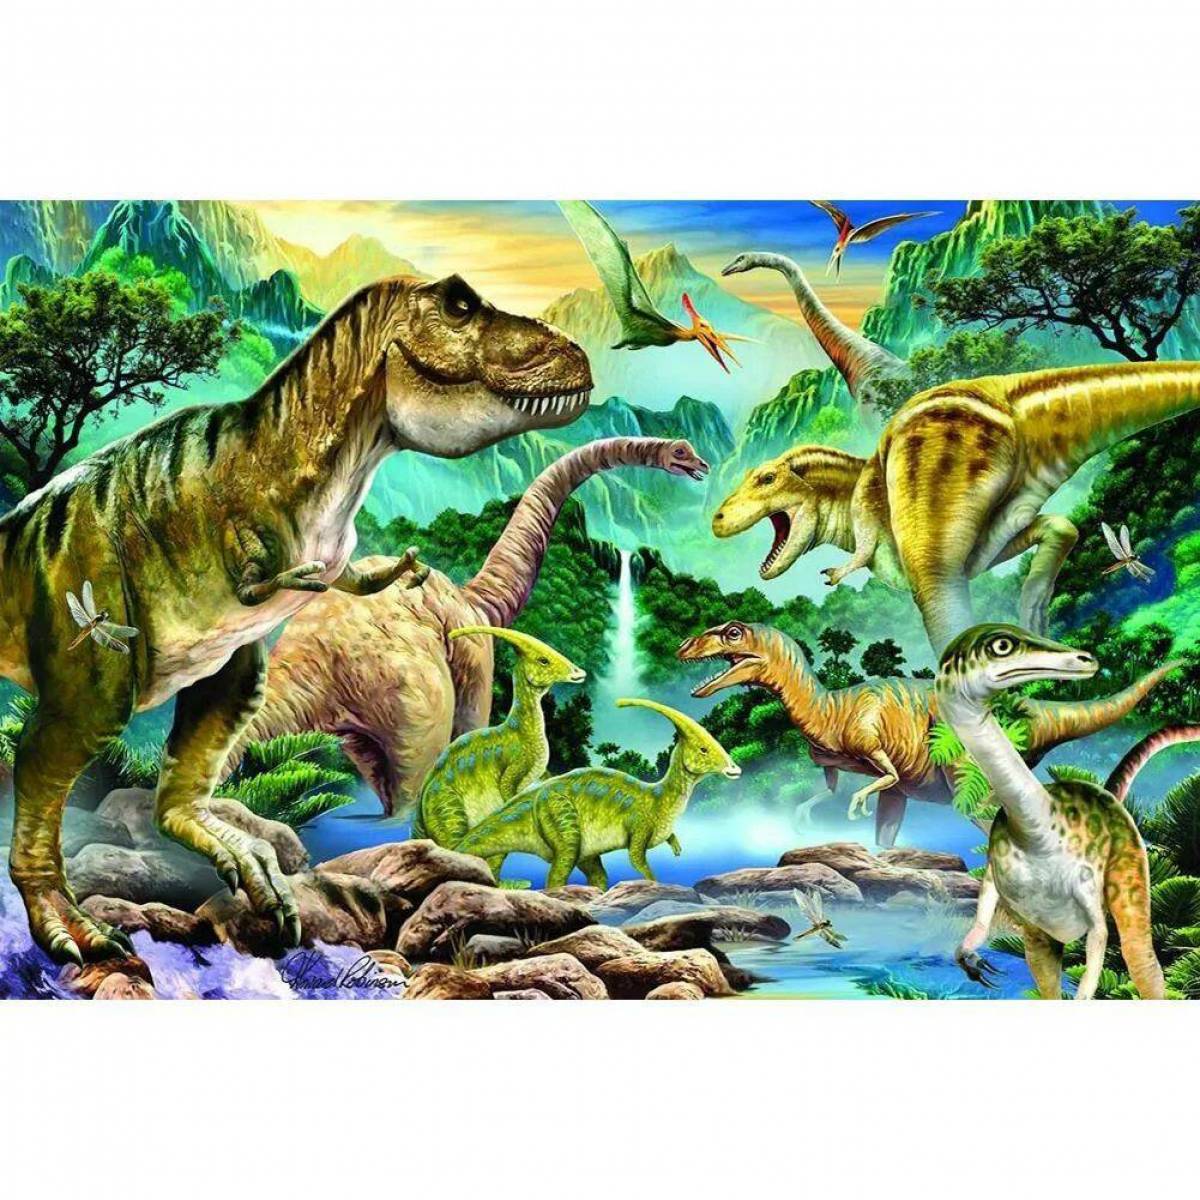 Древние времена динозавров. Юрский период мезозойской эры. Динозавры Юрского периода. Динозавры мезозойской эры. Животные Юрского периода мезозойской эры.